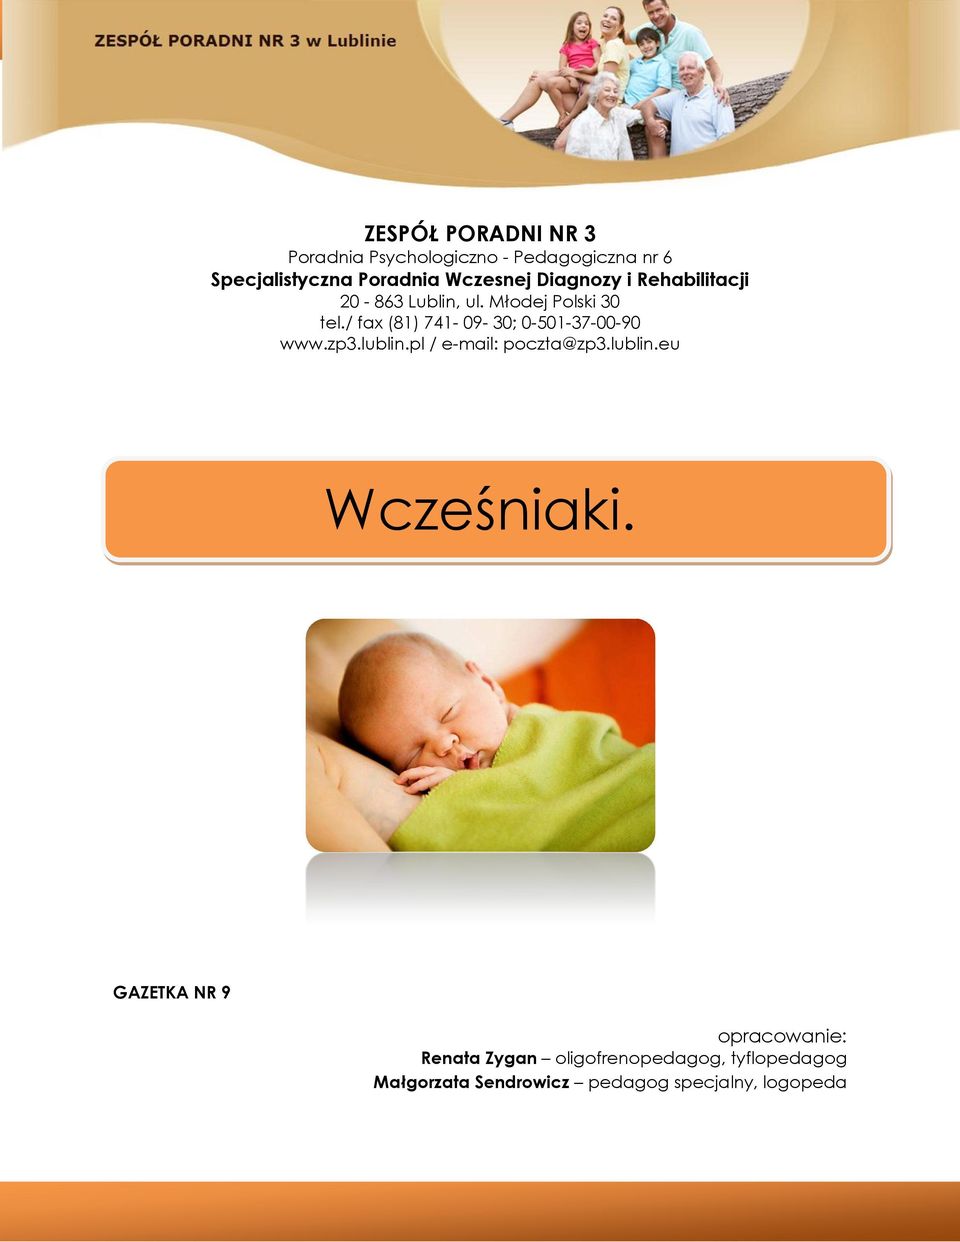 / fax (81) 741-09- 30; 0-501-37-00-90 www.zp3.lublin.pl / e-mail: poczta@zp3.lublin.eu Wcześniaki.